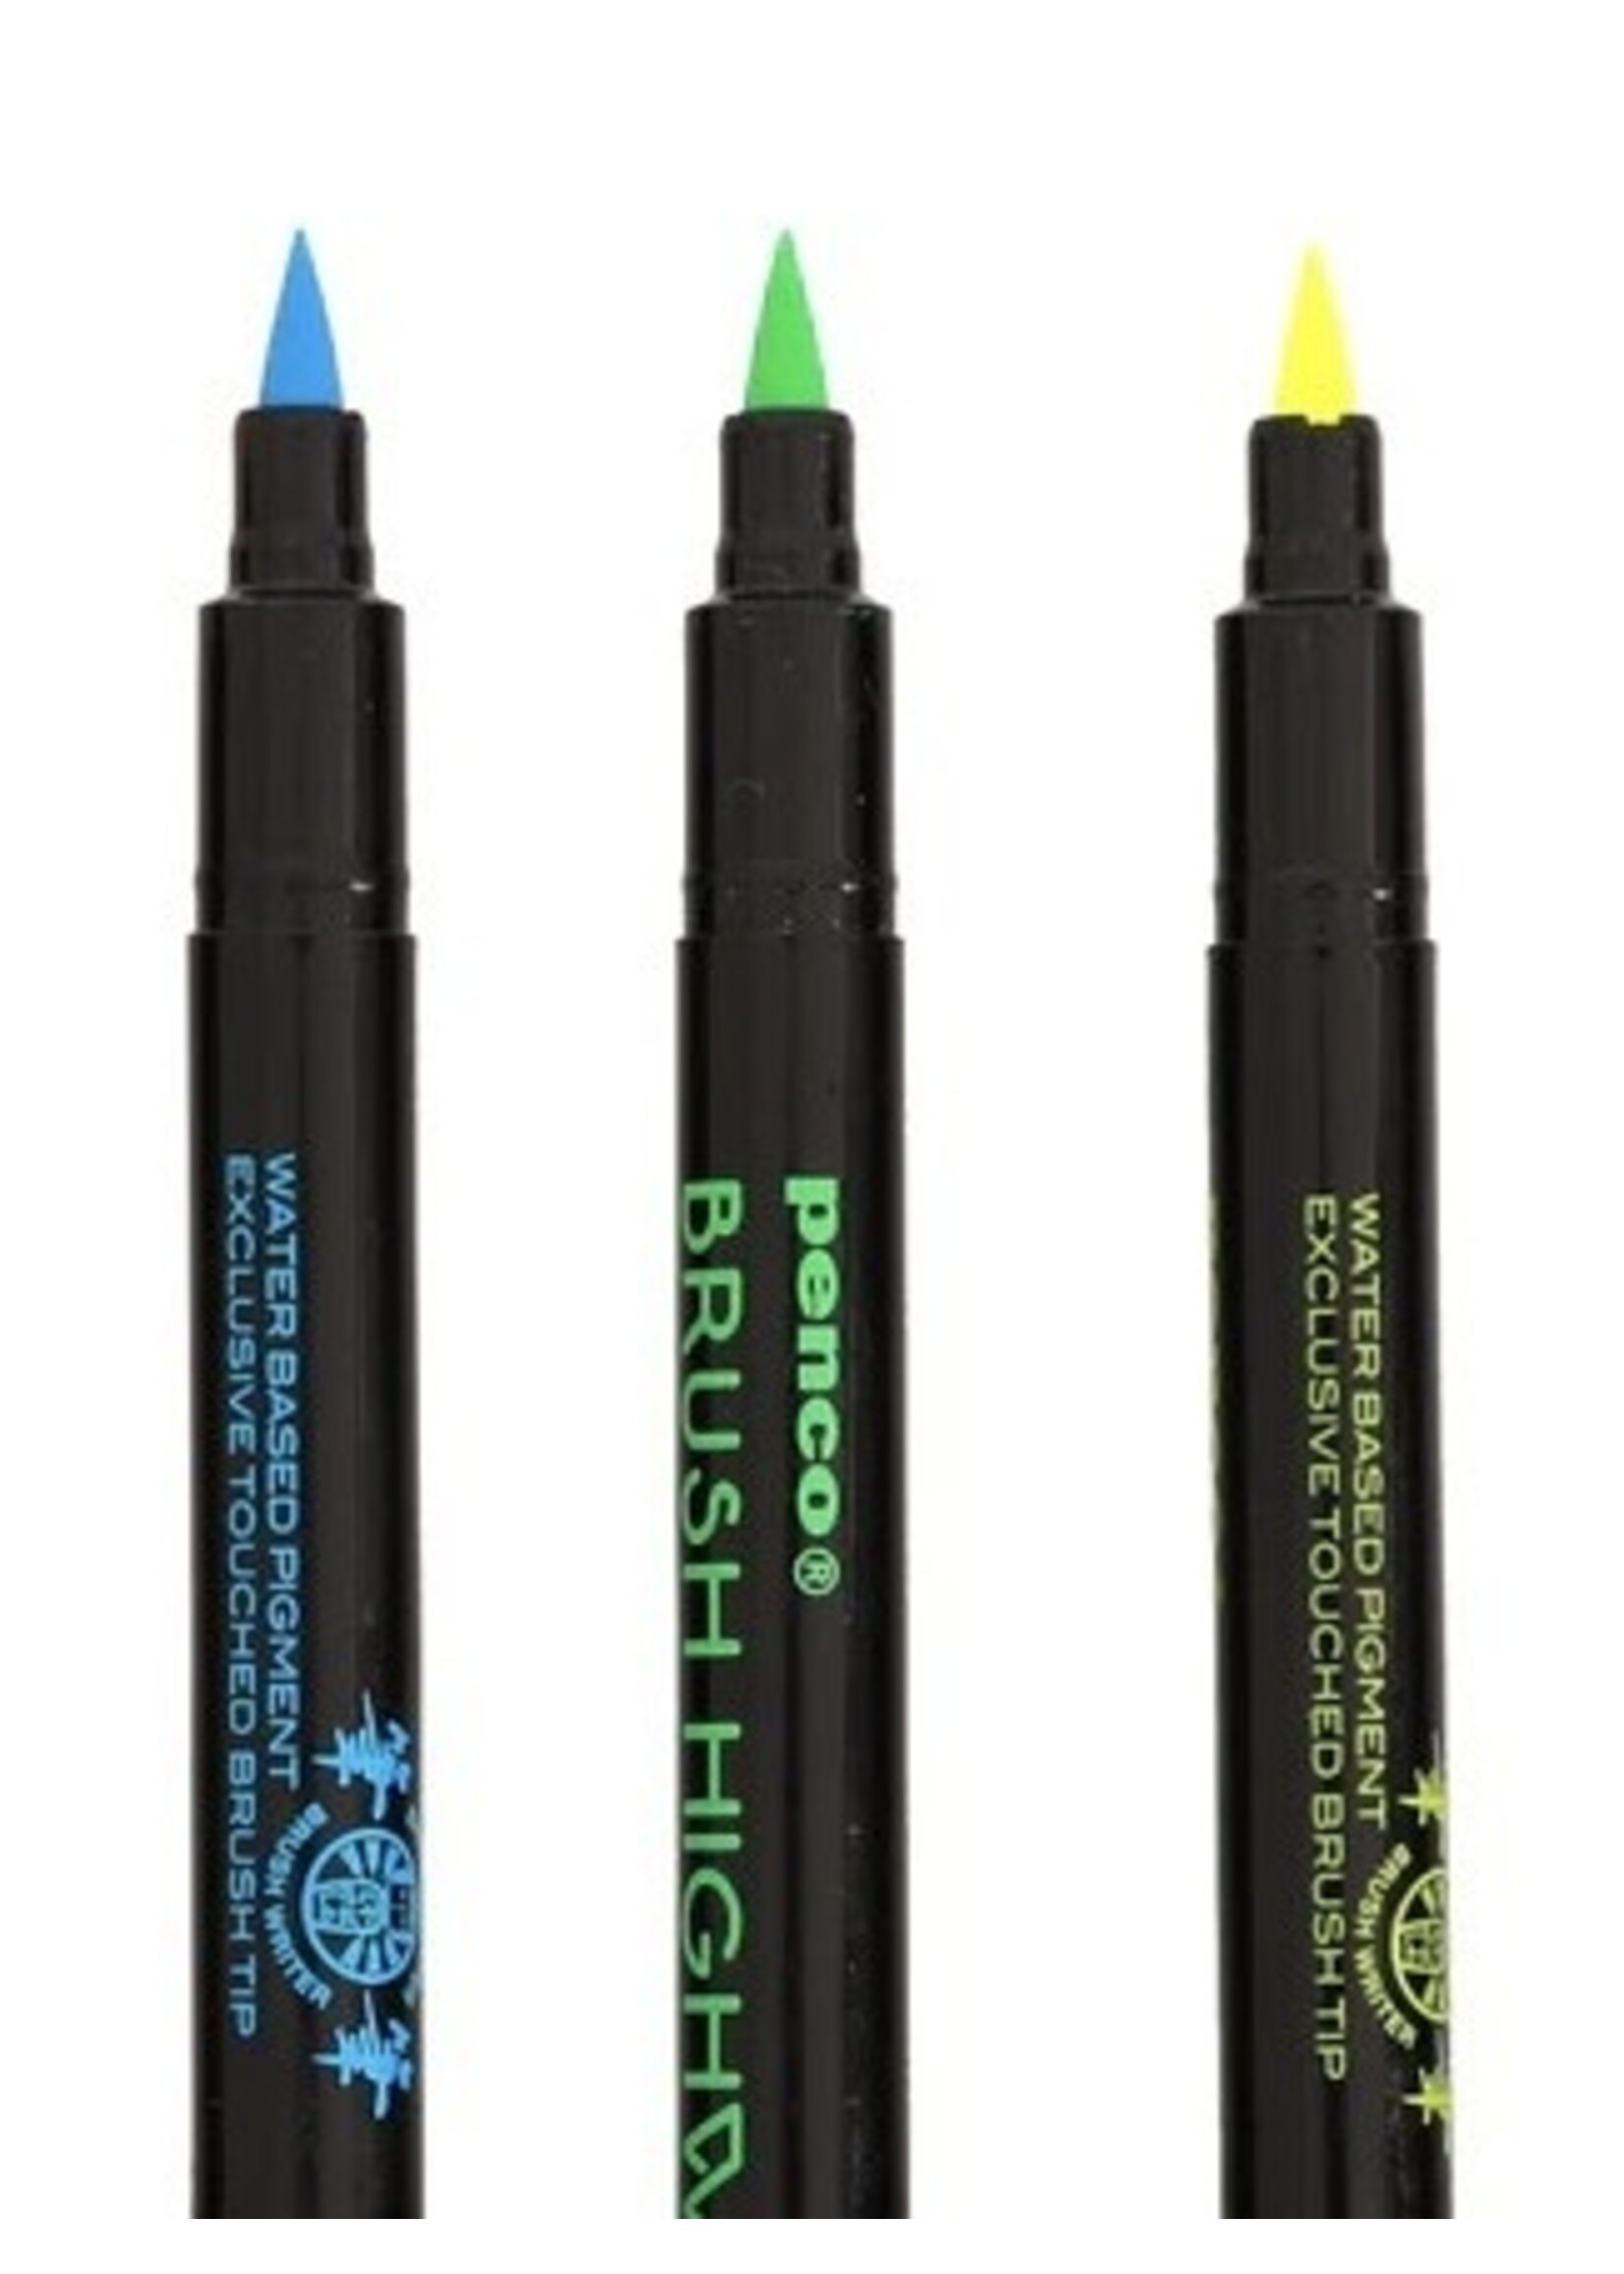 Hightide Pens "Highlighter Brush" by Penco